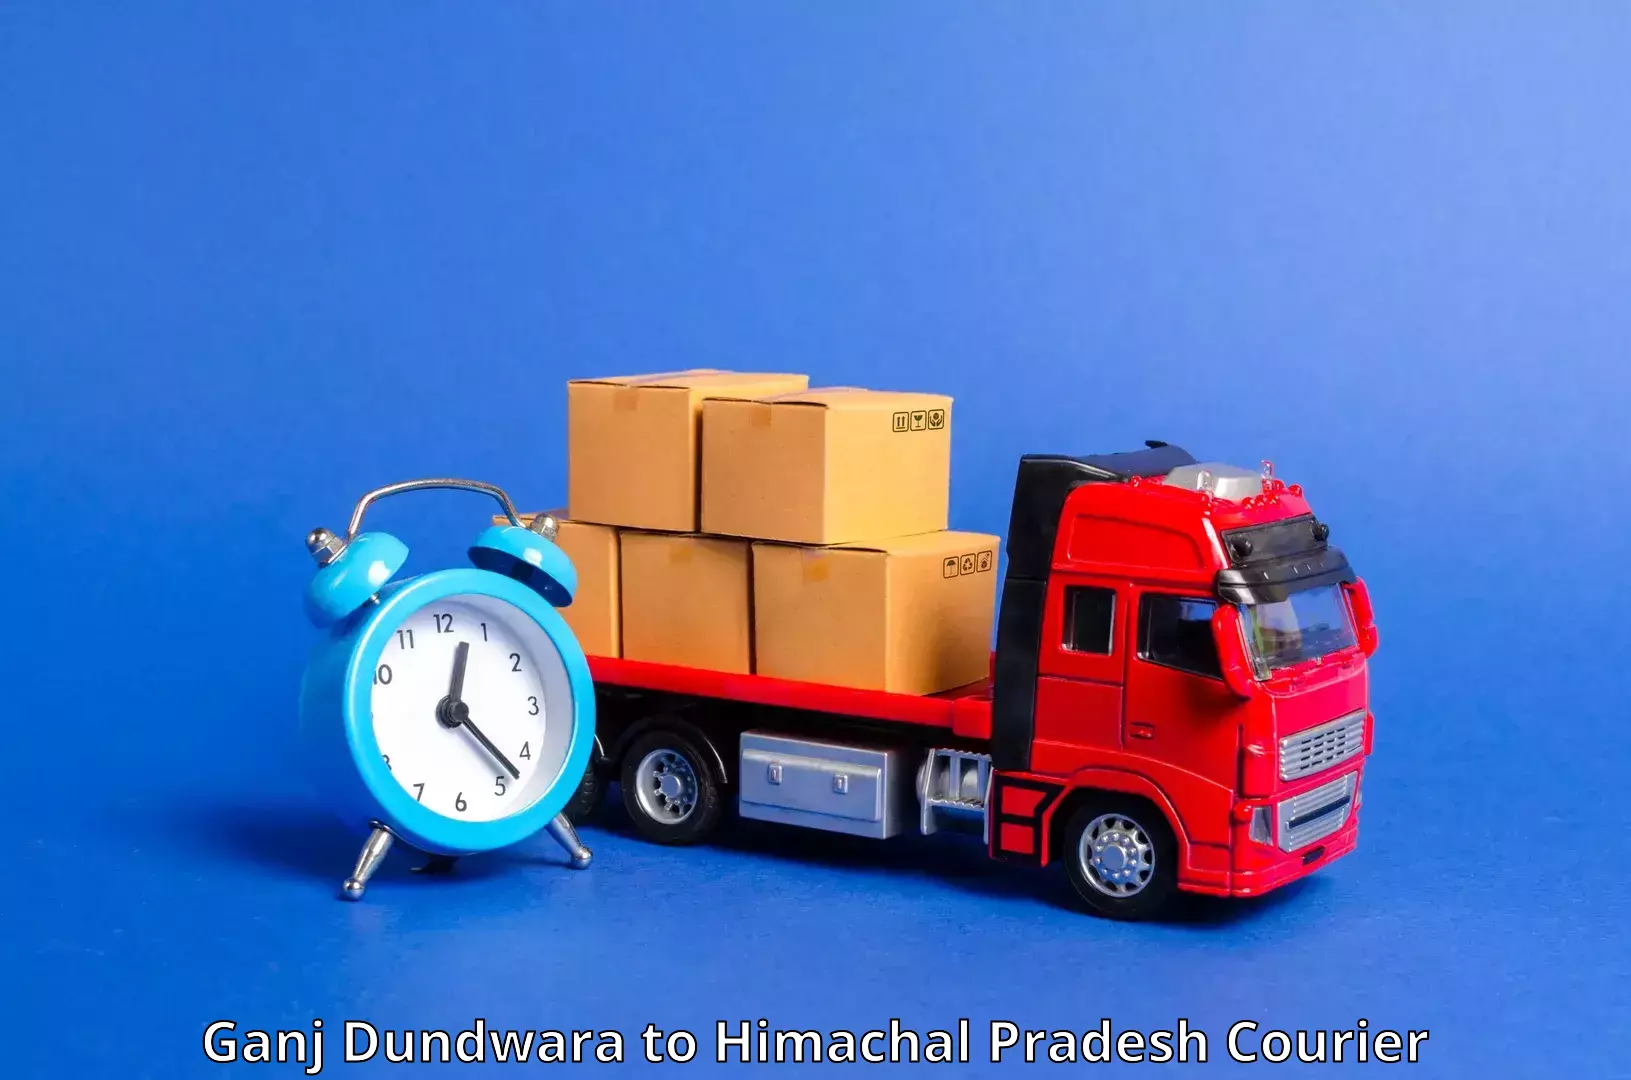 Urban courier service Ganj Dundwara to Anni Kullu